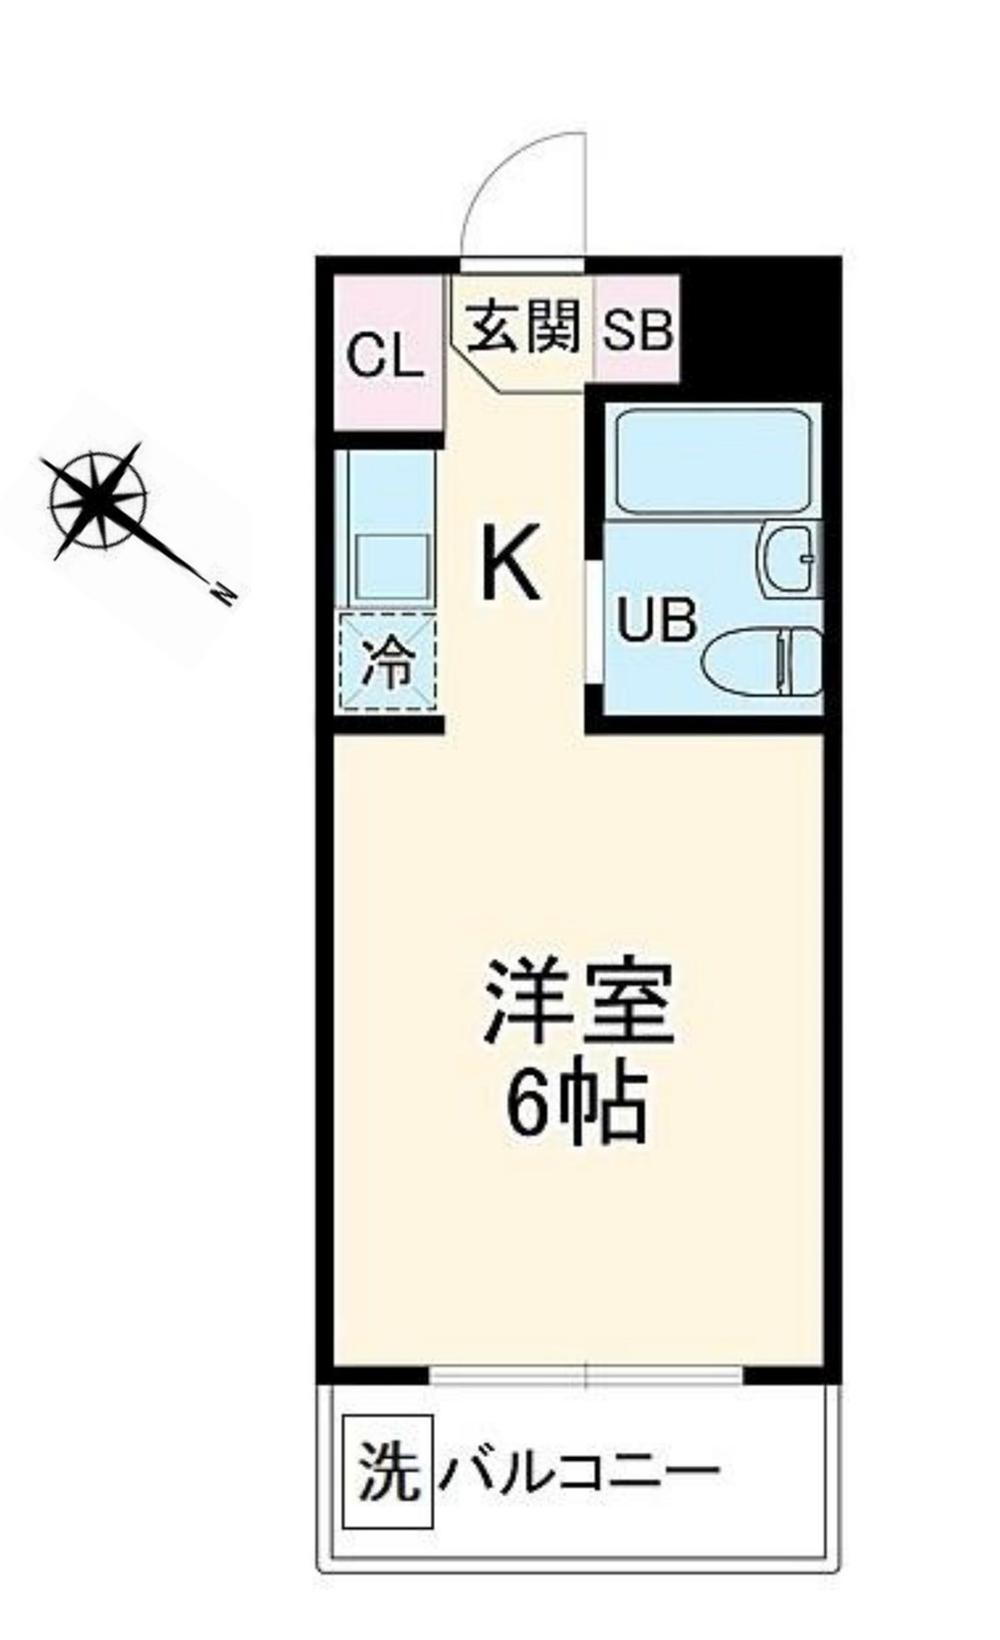 スカイコート横浜黄金町【オーナーチェンジ】 4階 ワンルーム 物件詳細